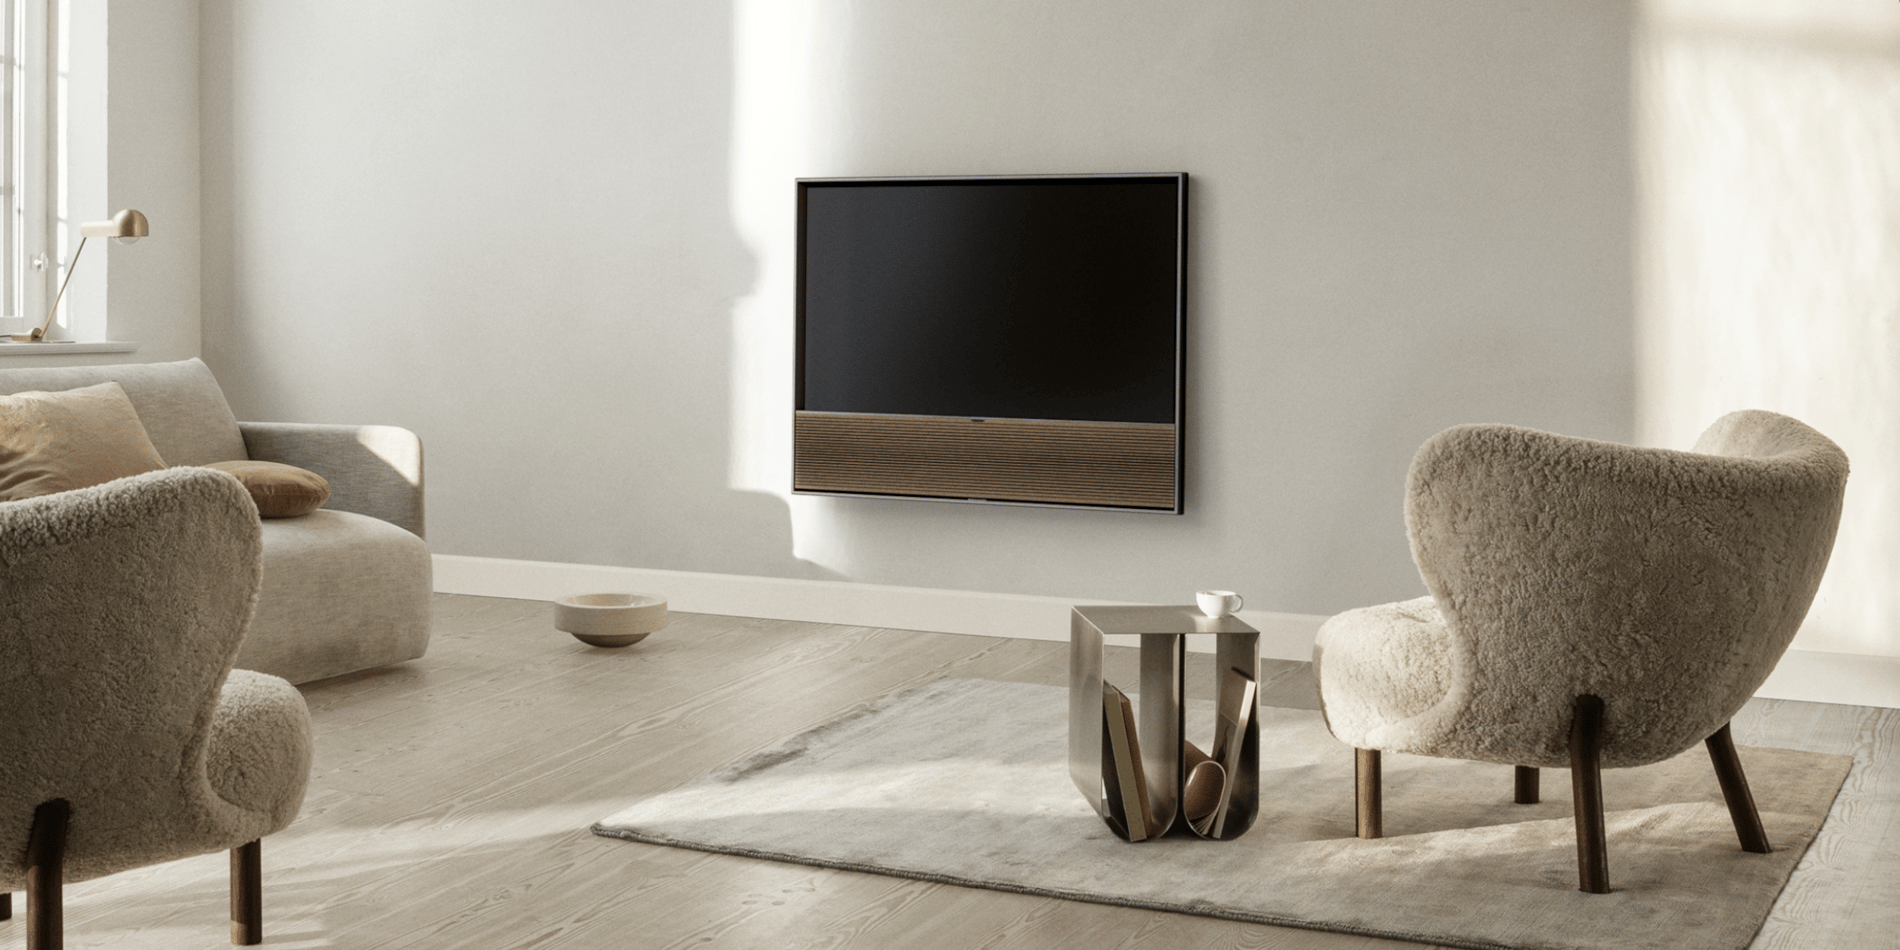 Универсальный OLED-телевизор Beovision Contour